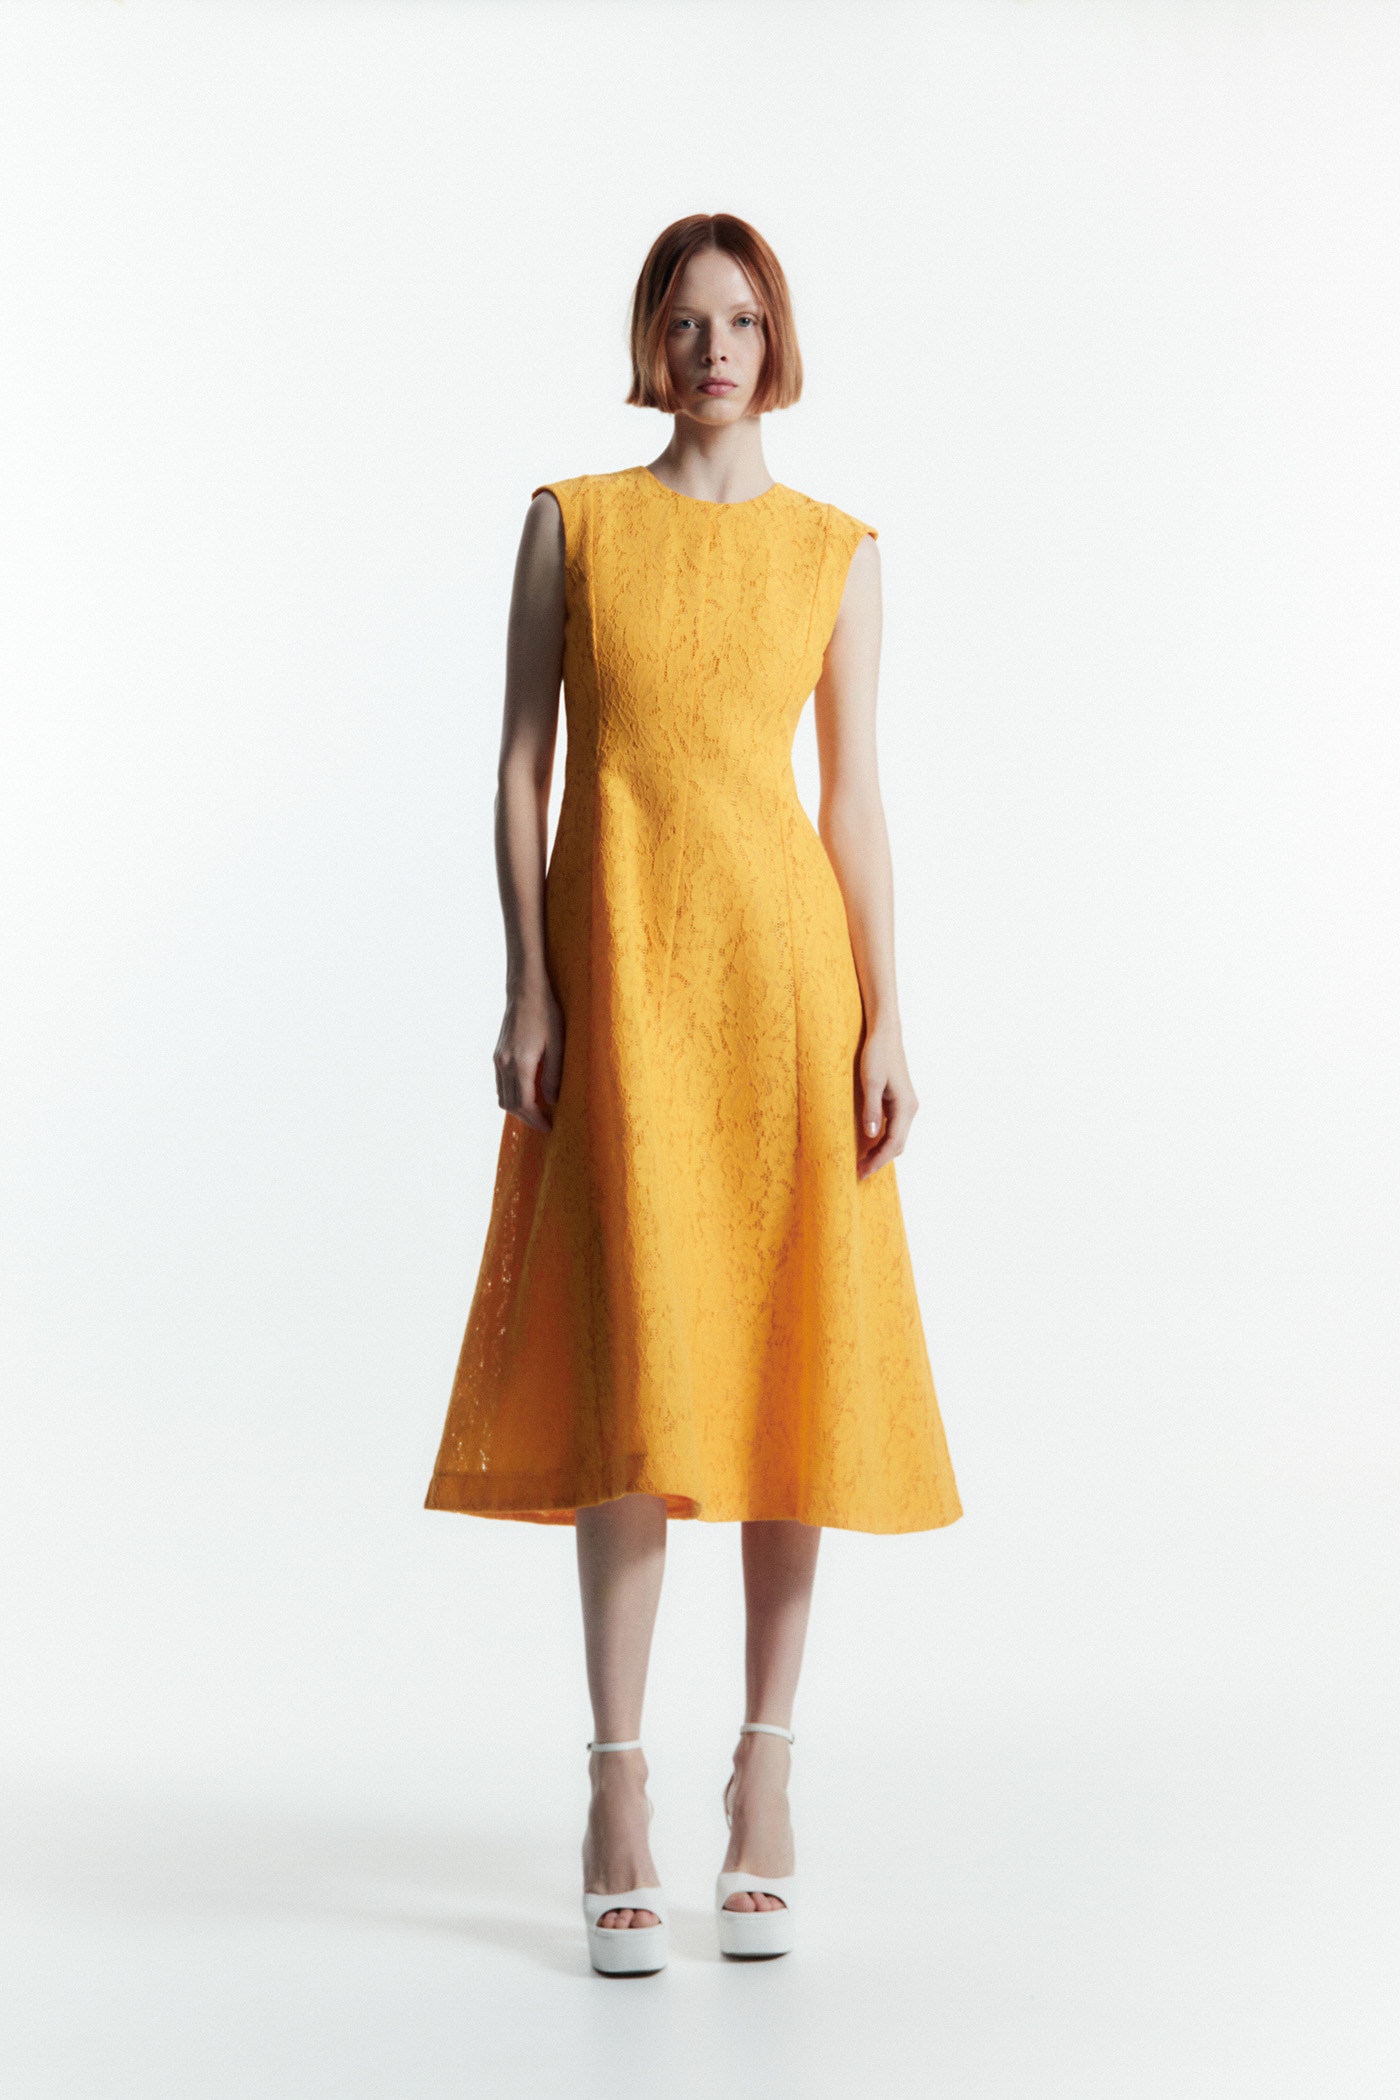 Las expertas en moda eligen estos 10 vestidos de las rebajas de Sfera: fíchalos ya